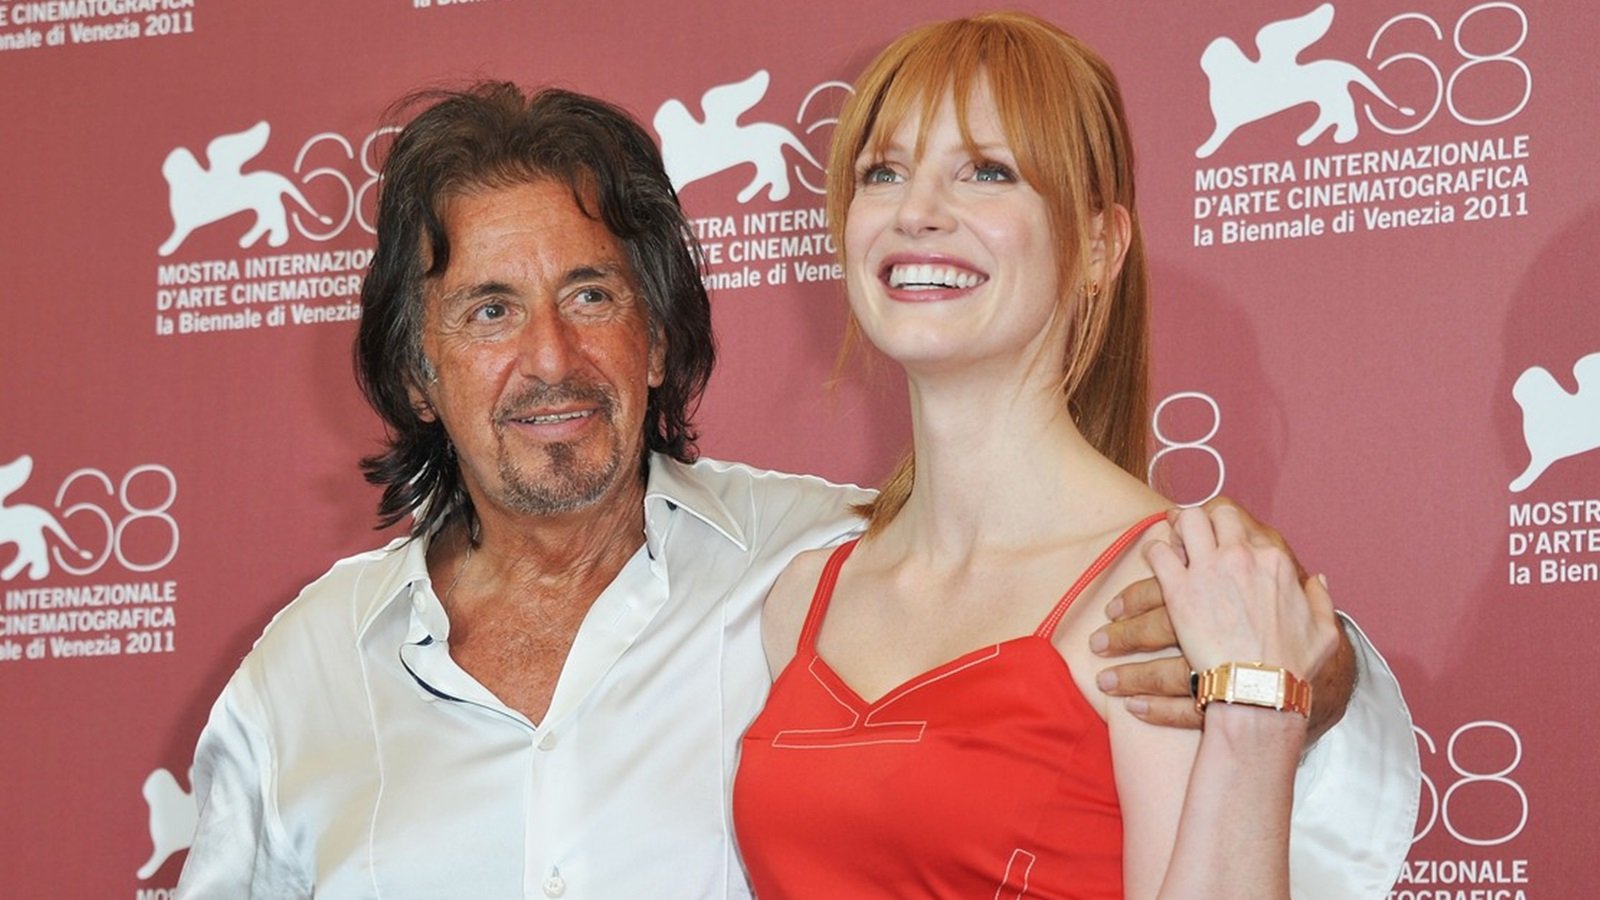 Al Pacino e Jessica Chastain star di Lear, Rex..., nuovo film ispirato all'opera di William Shakespeare